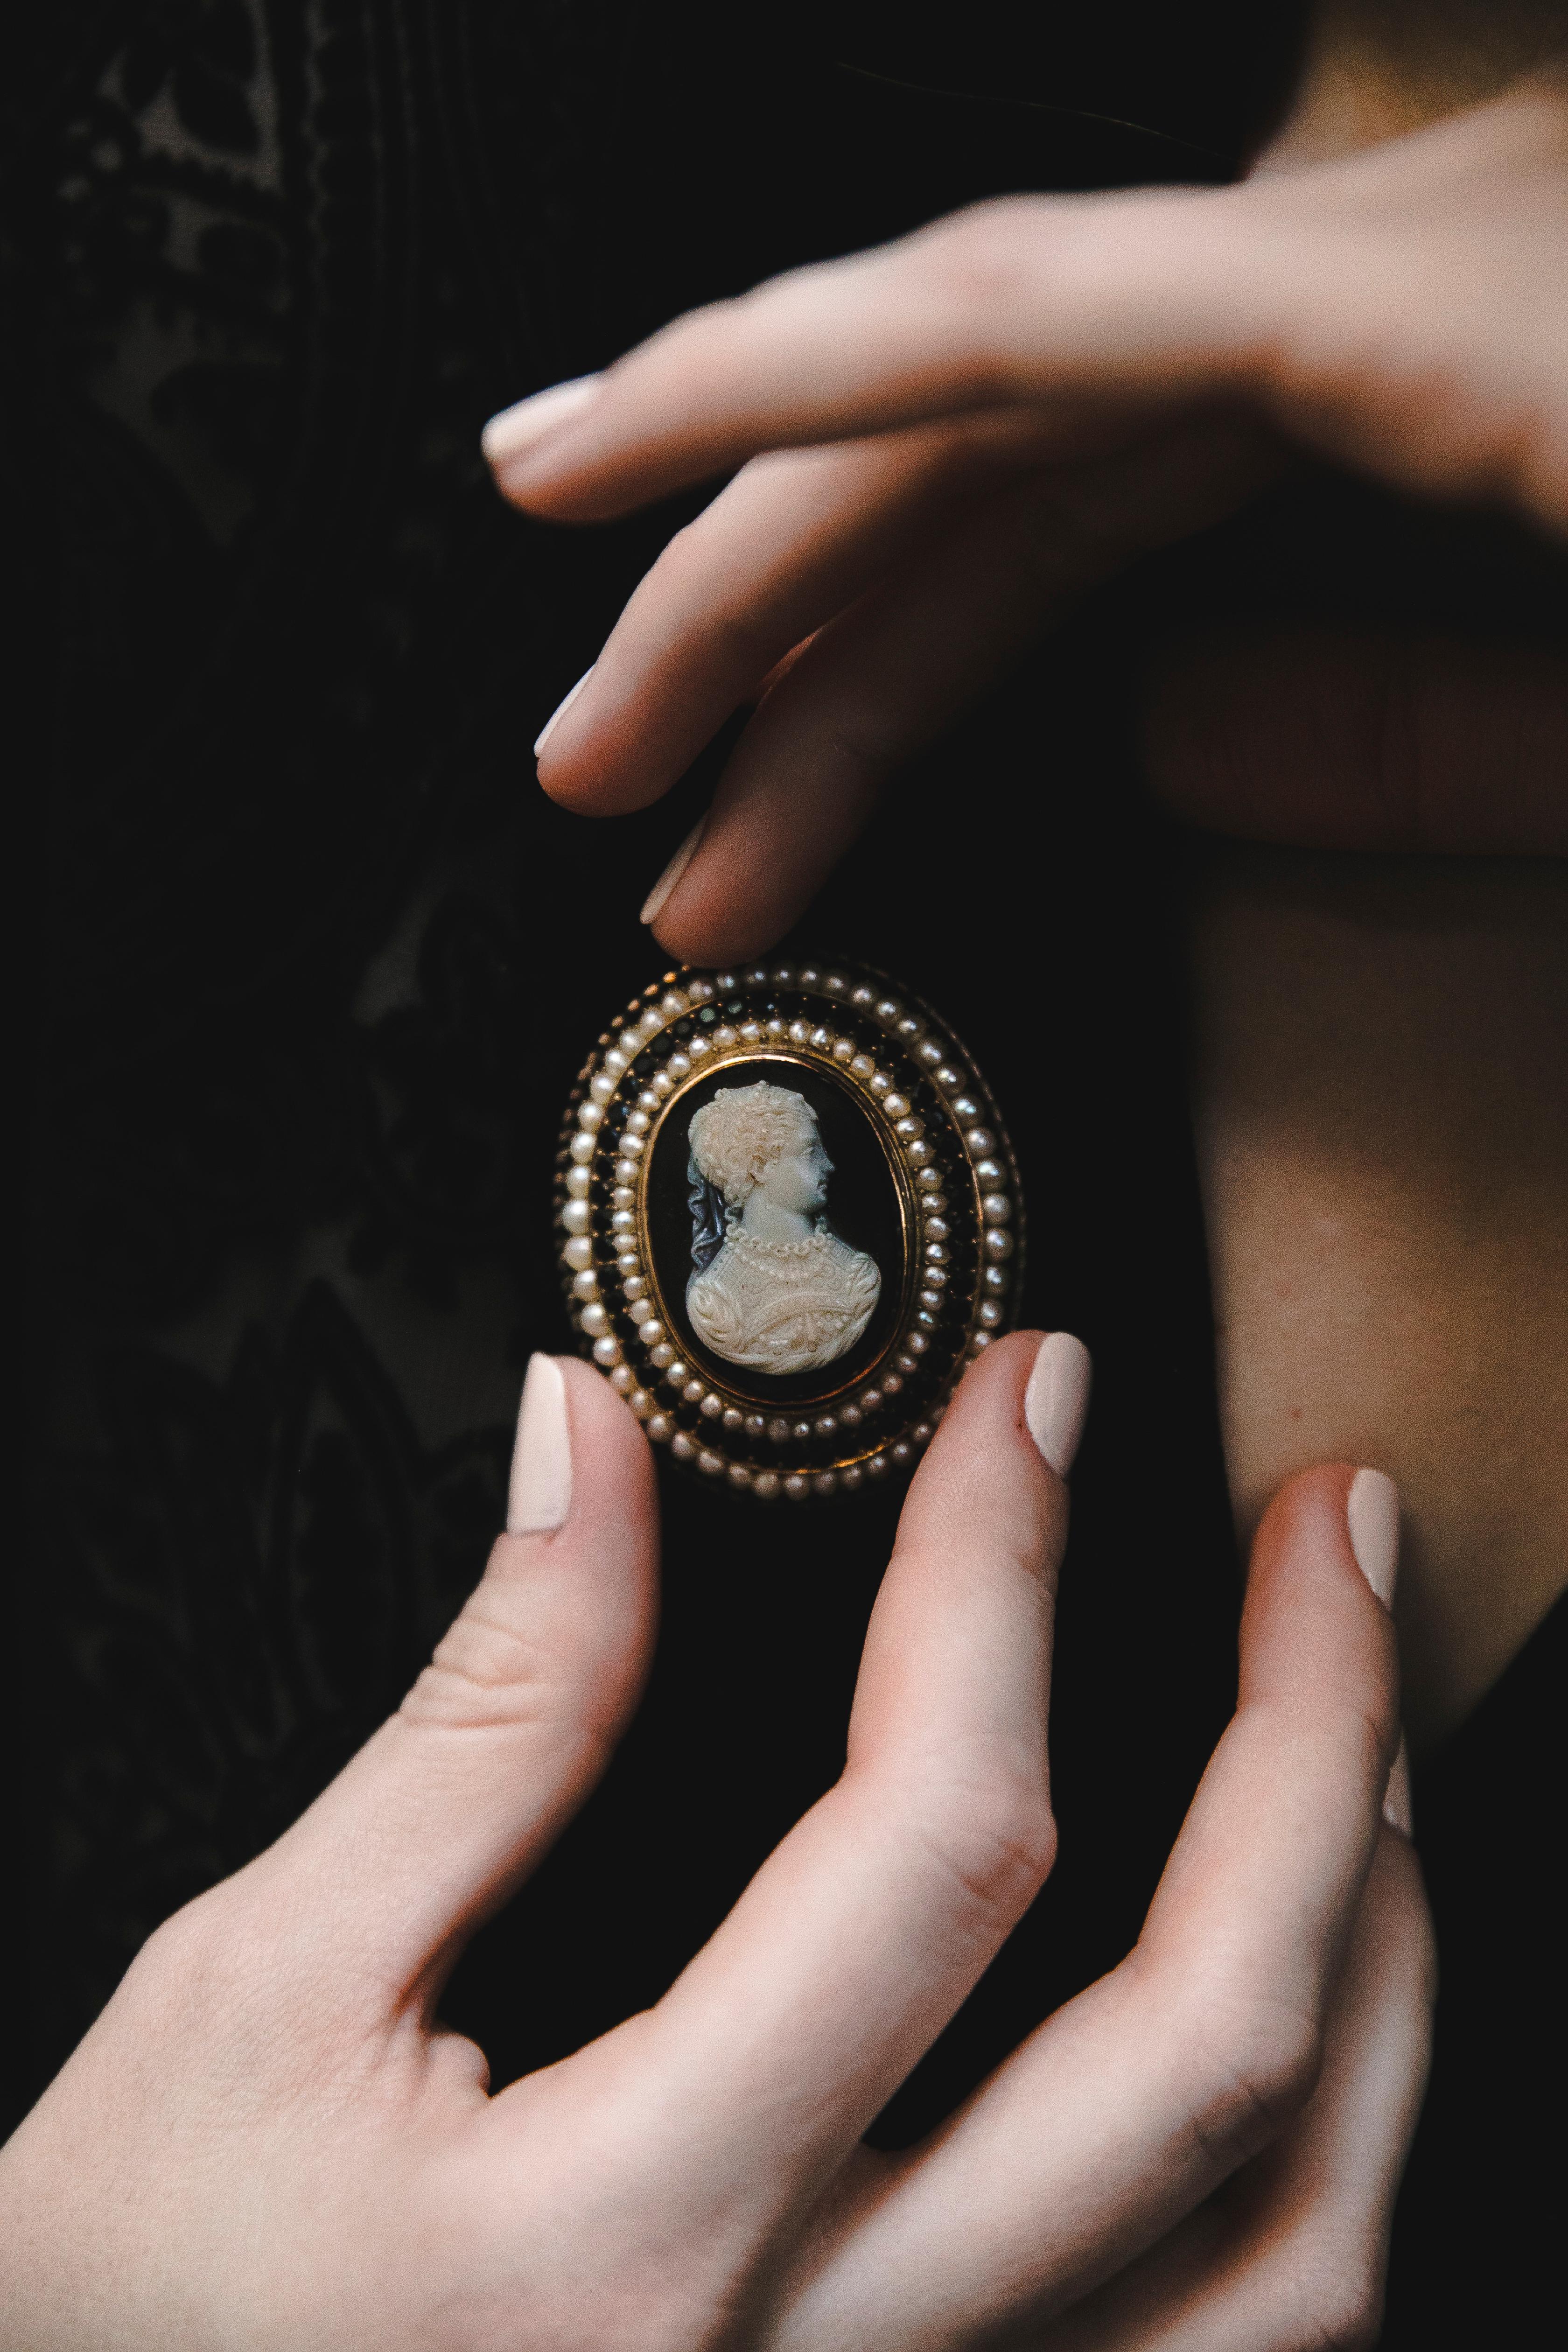 Broche Victorienne Antique Agate et Graines de Perles, Grenat Or Jaune Camée 1860
Travail extrêmement délicat et fin représentant une femme de la haute société, avec des perles et une robe en soie. 
La broche est disposée en niveaux s'accumulant,